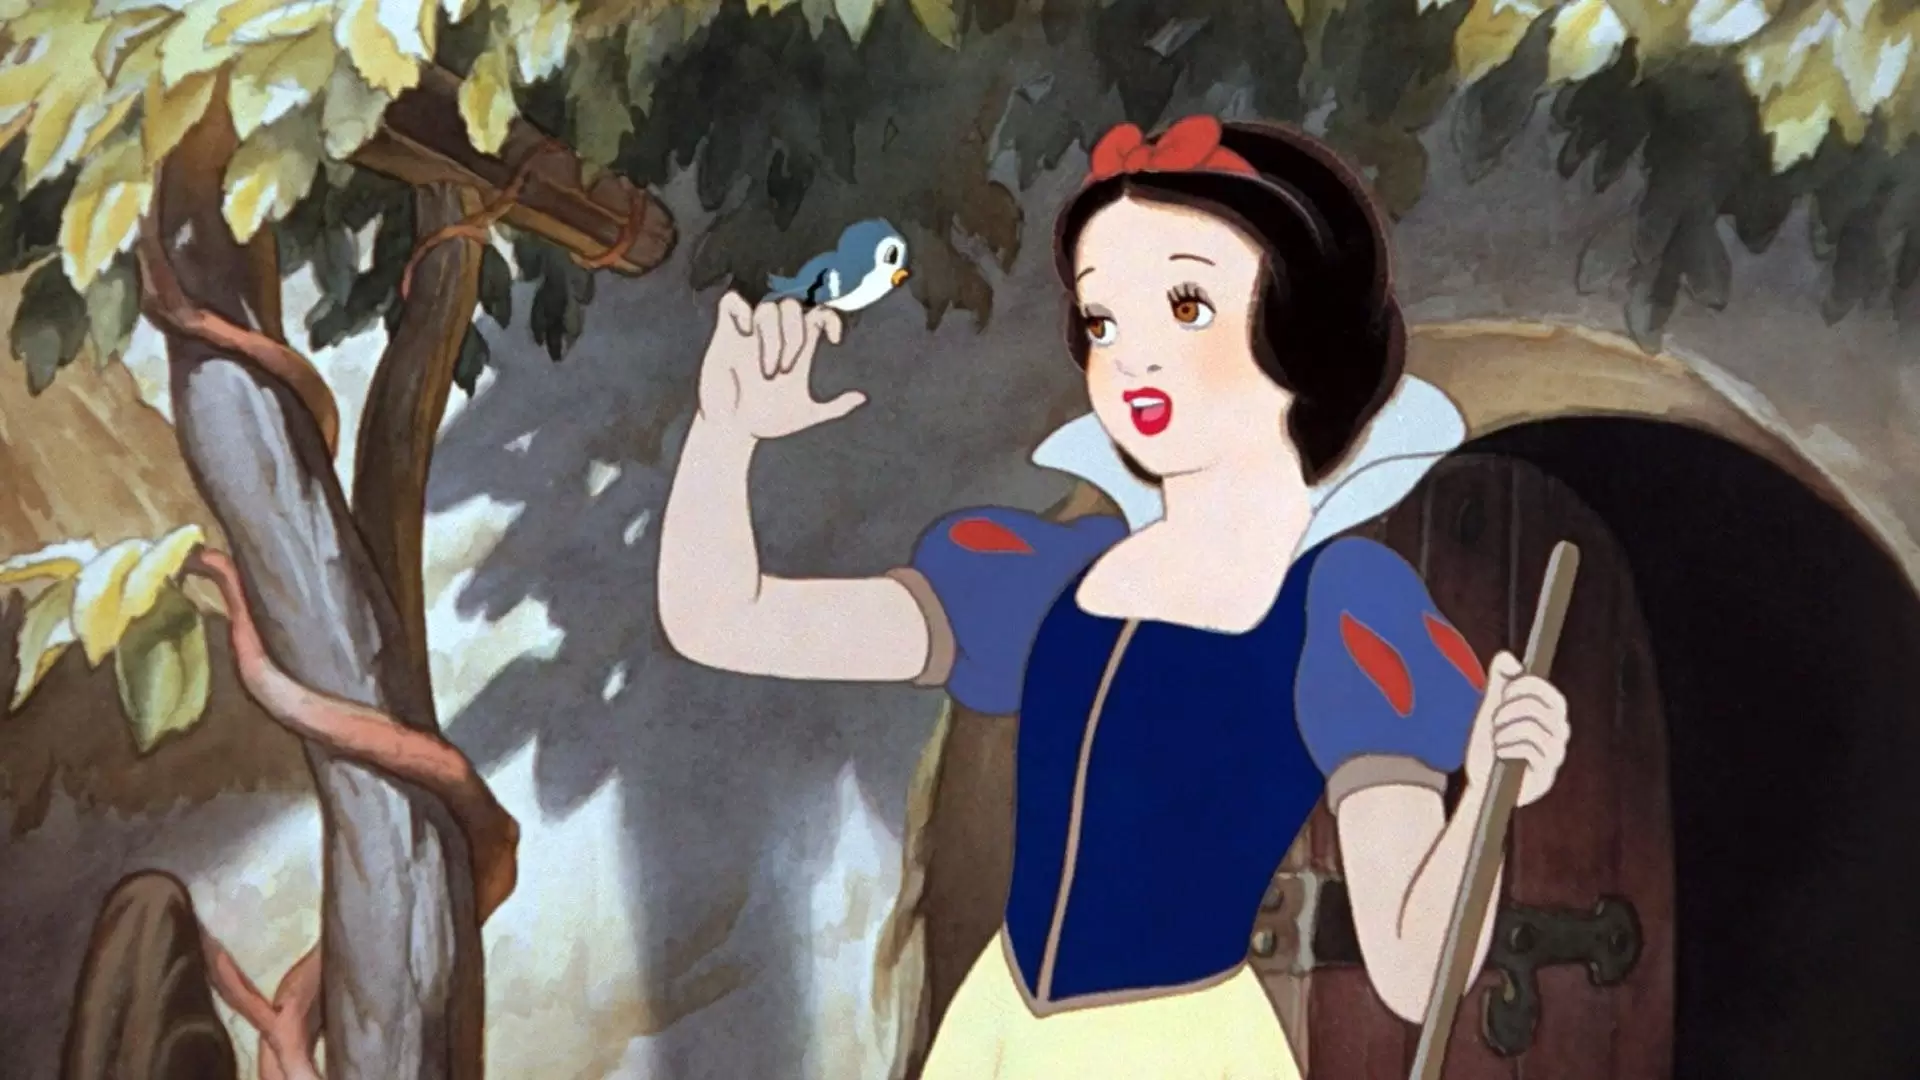 دانلود انیمیشن Snow White and the Seven Dwarfs 1937 (سفید برفی و هفت کوتوله) با زیرنویس فارسی و تماشای آنلاین